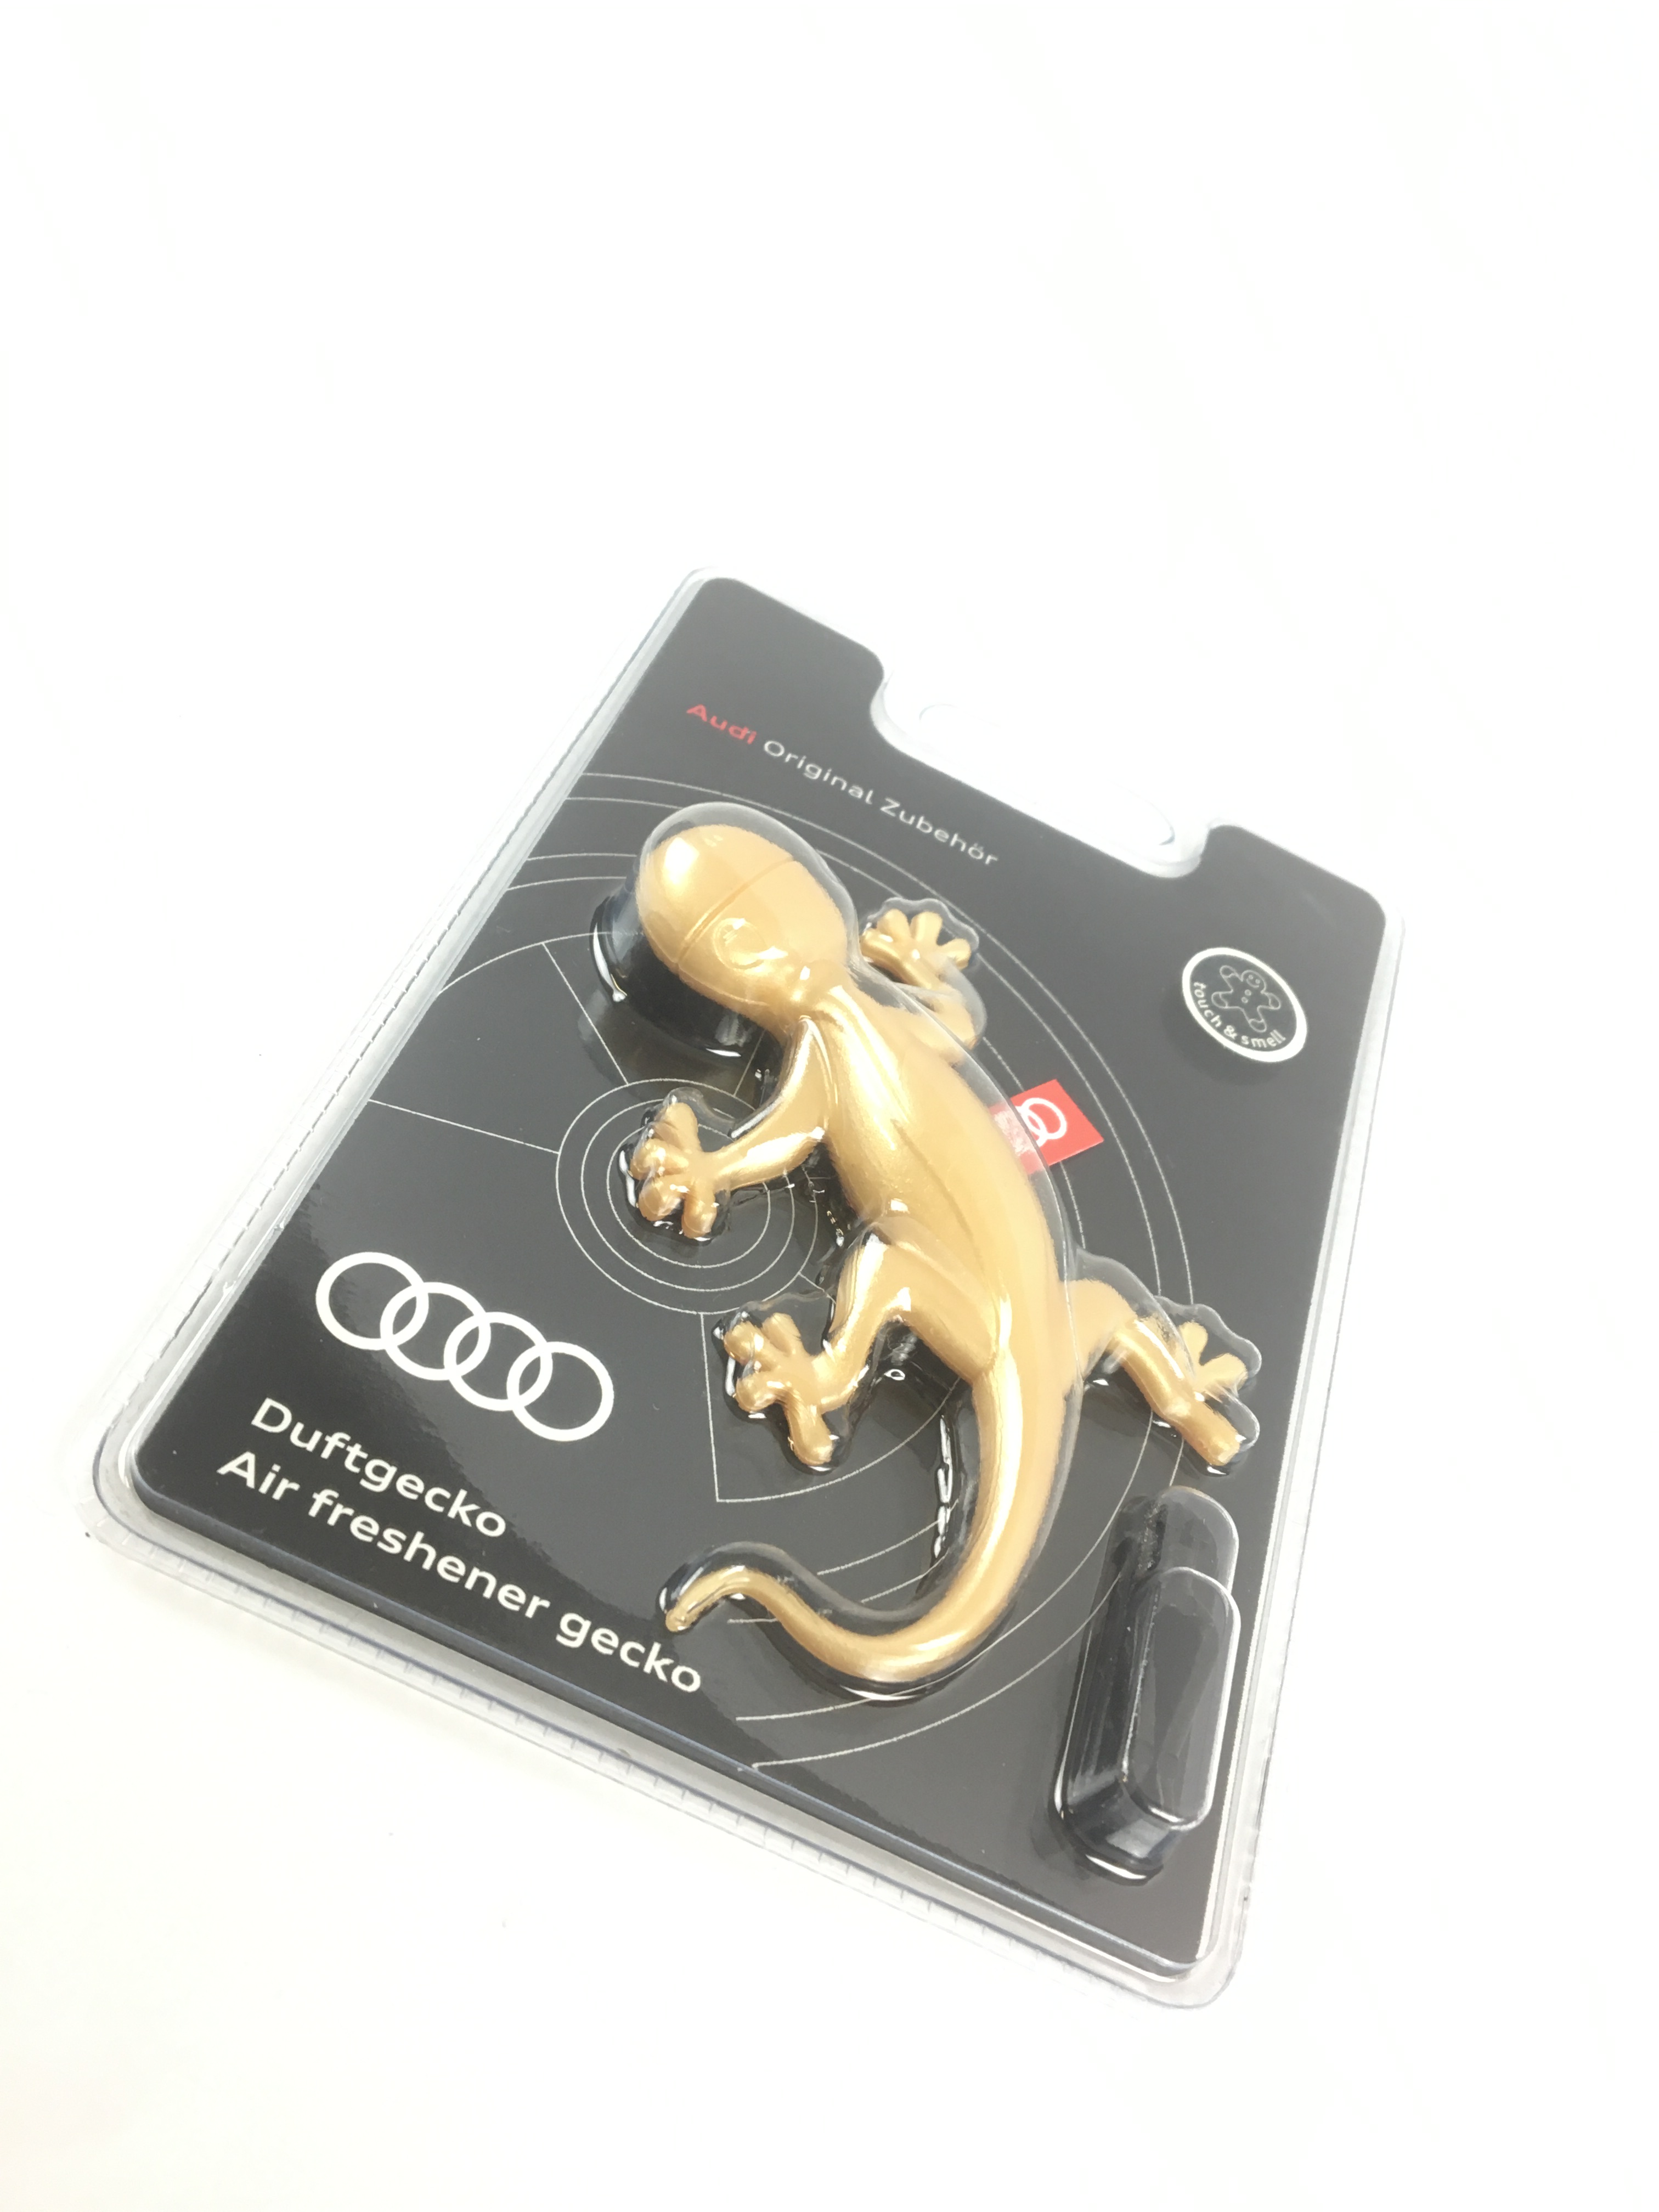 Duftgecko Gold Weihnachtsgecko aromatisch-zimtig, 000087009AS Audi, Mense  Onlineshop